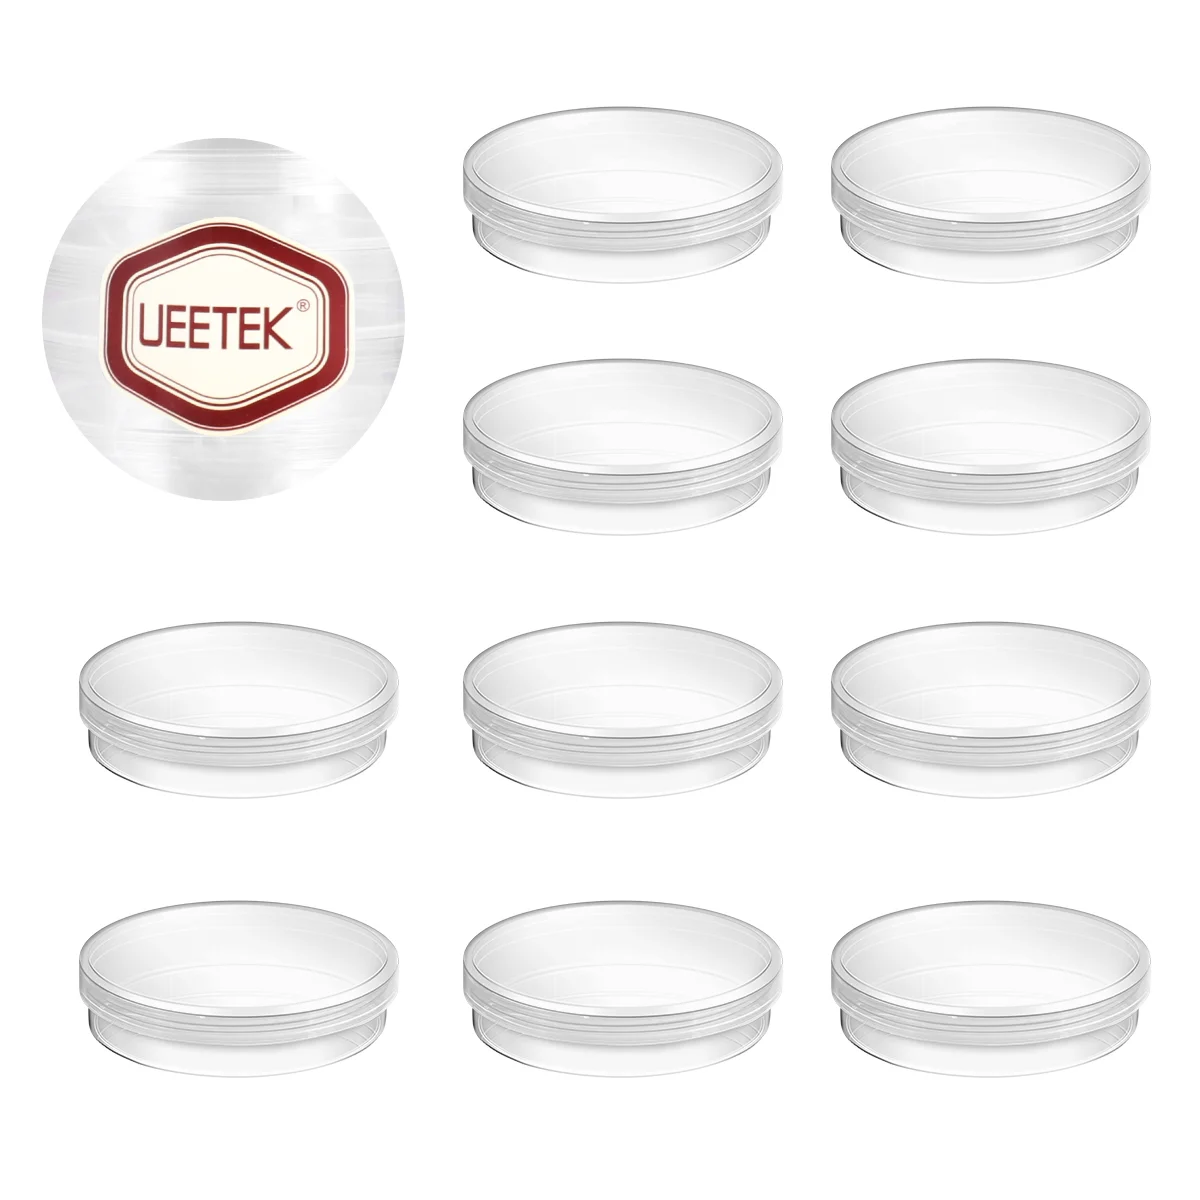 Plato de Petri transparente con tapa, 10 piezas, 70mm, para la escuela, laboratorio biomédico, química